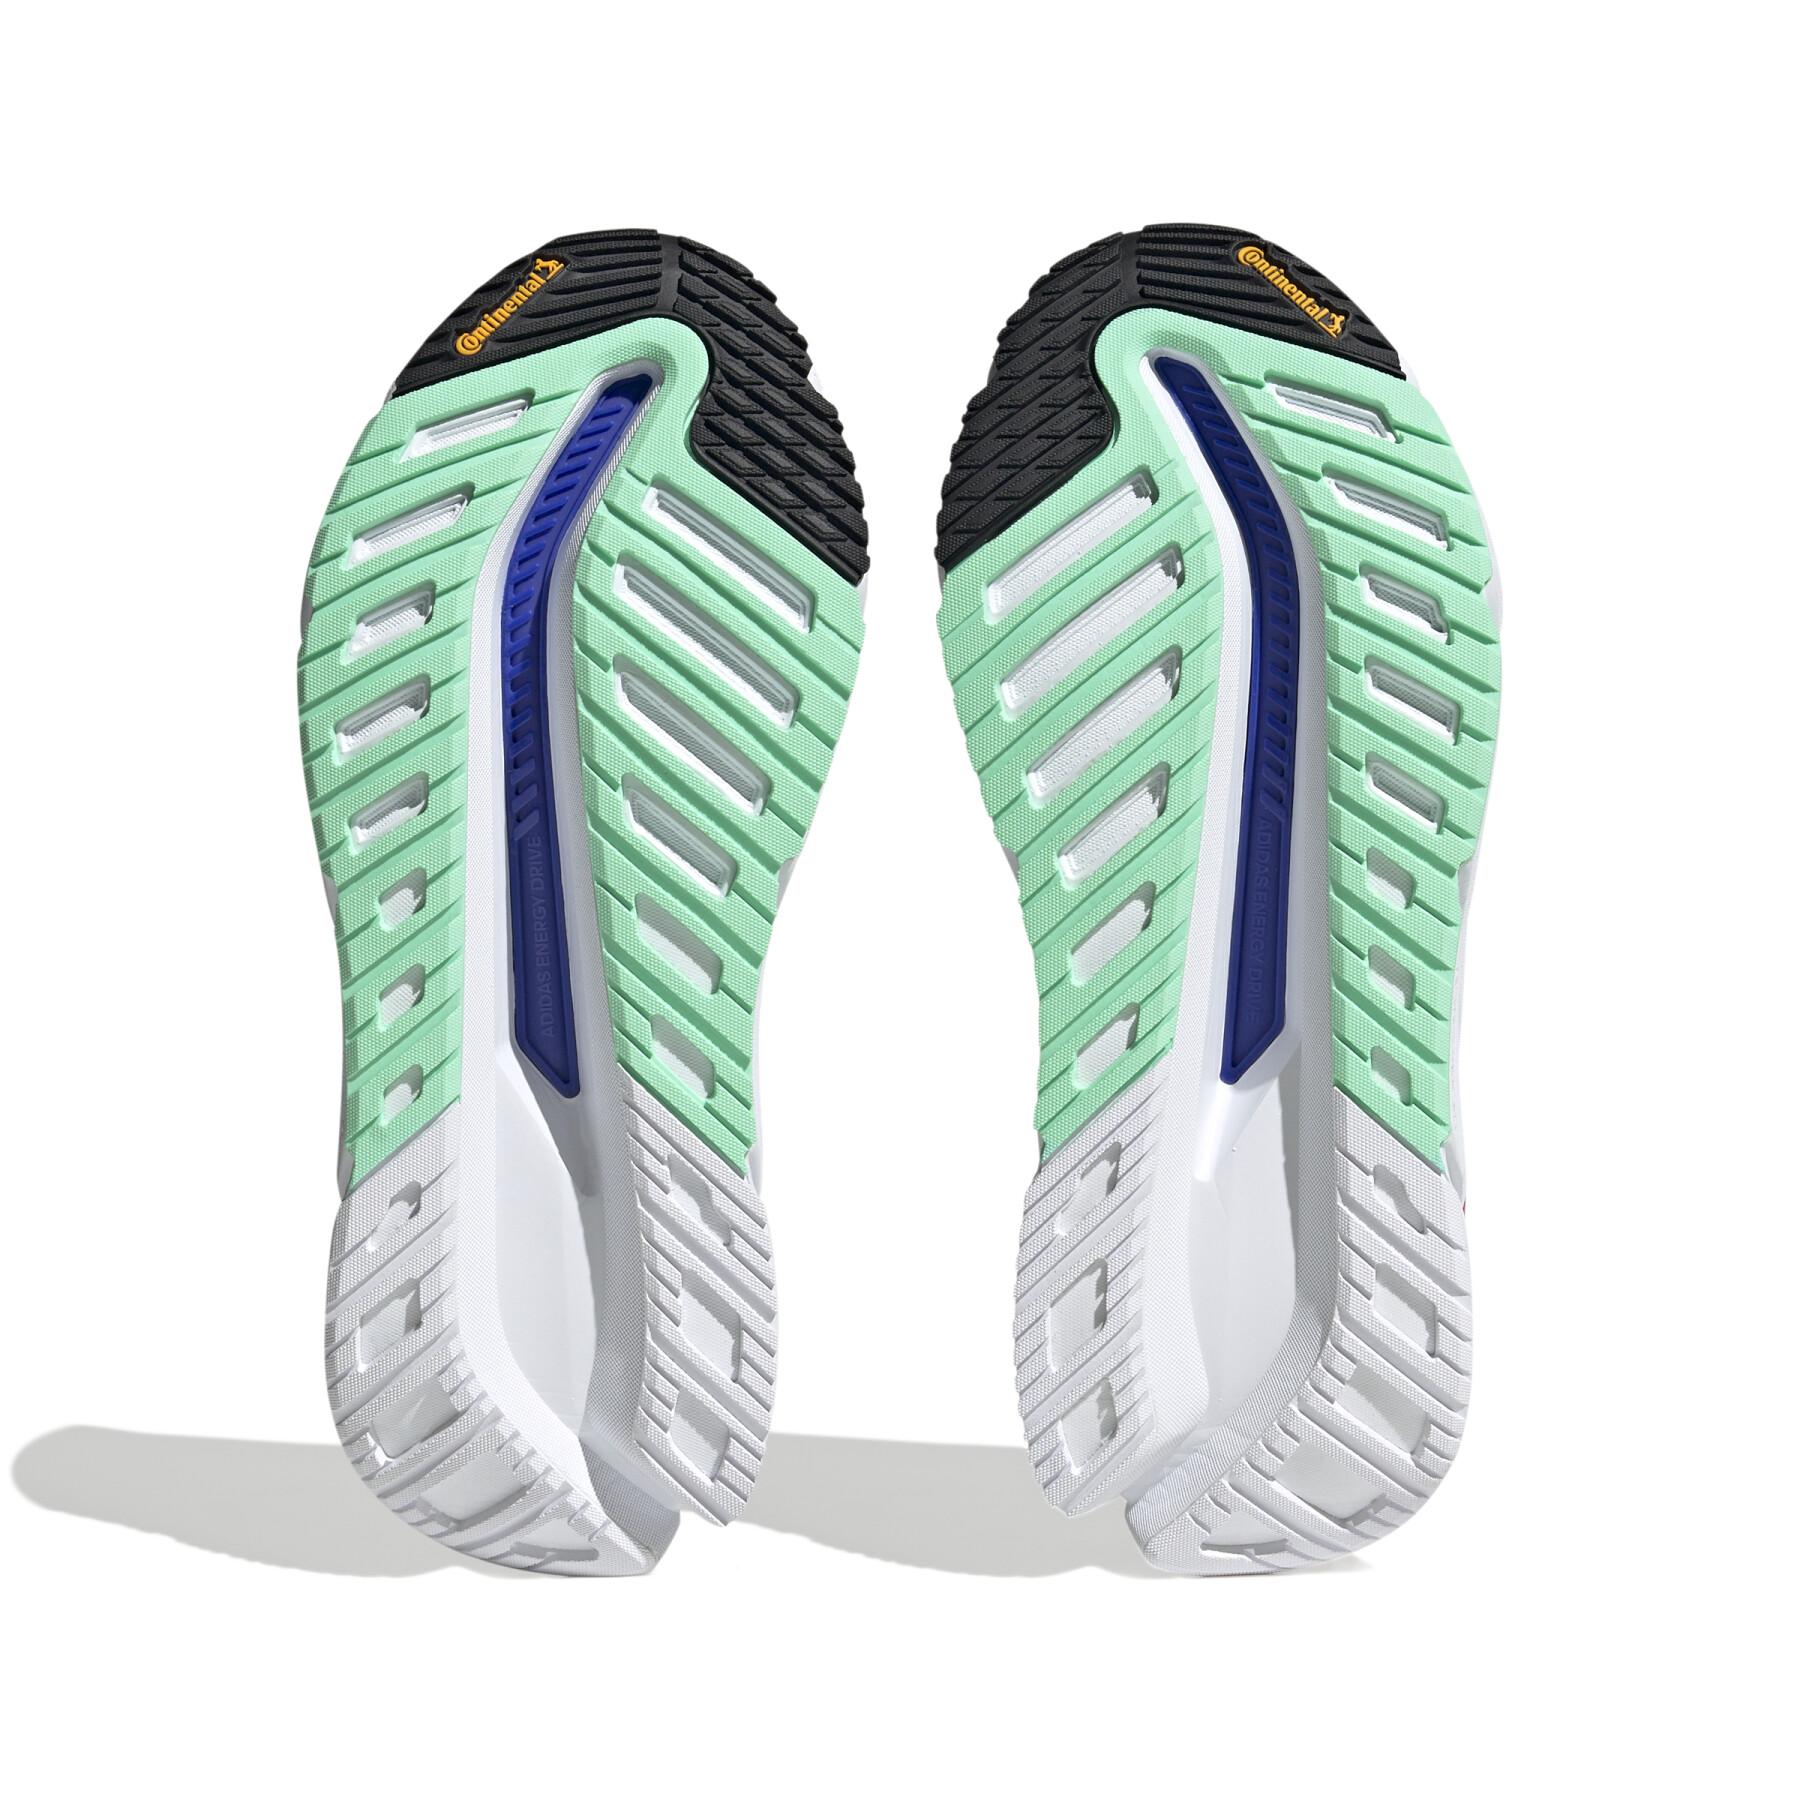 Zapatillas de running adidas Adistar CS